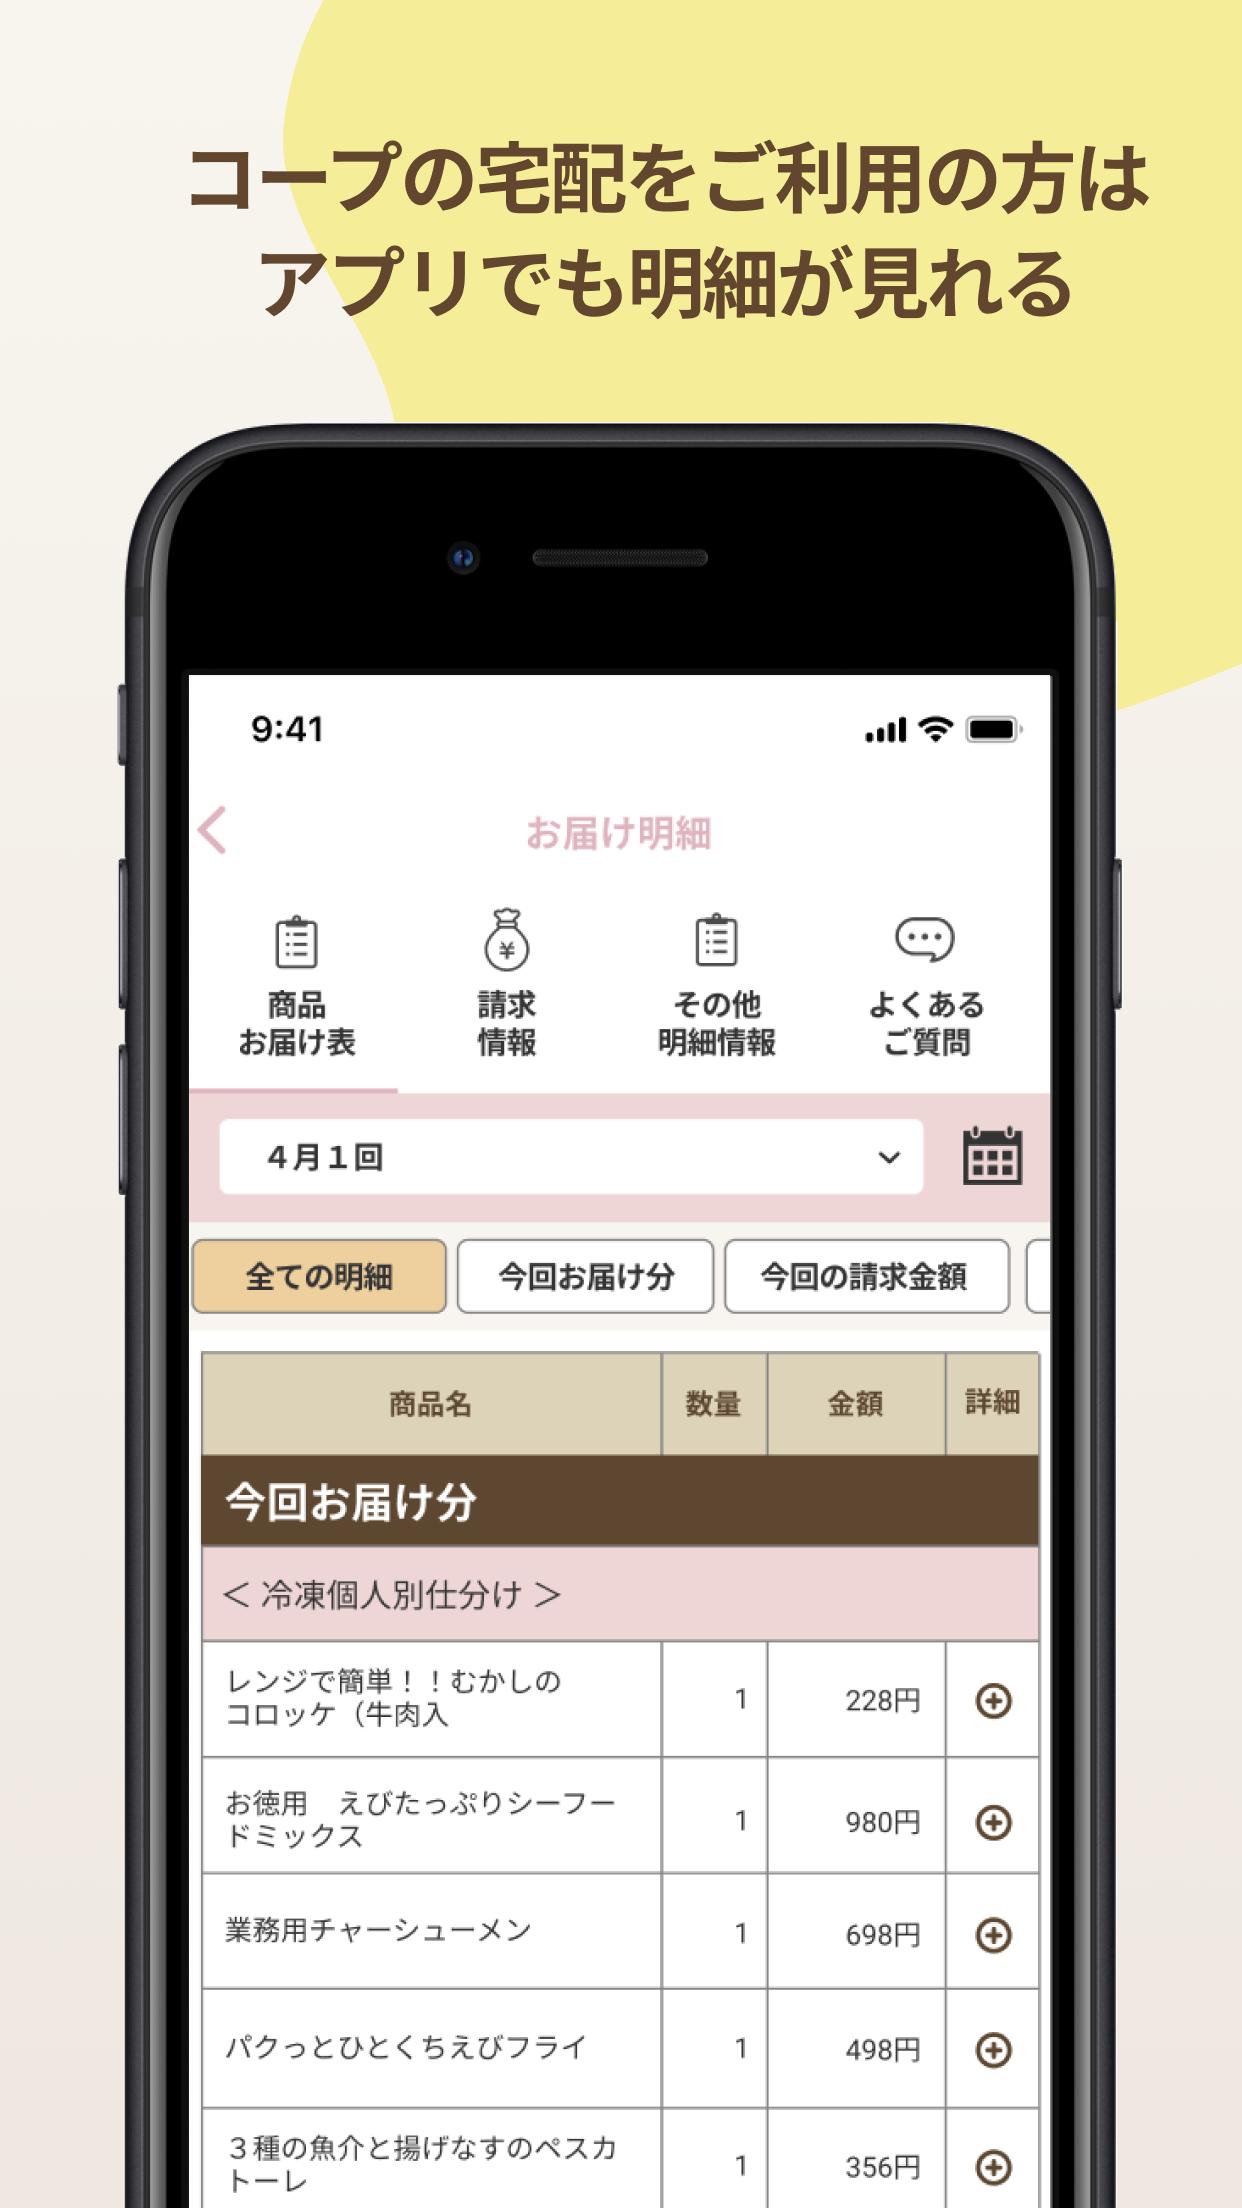 いずみ市民生協アプリ 1.0.7 Screenshot 9